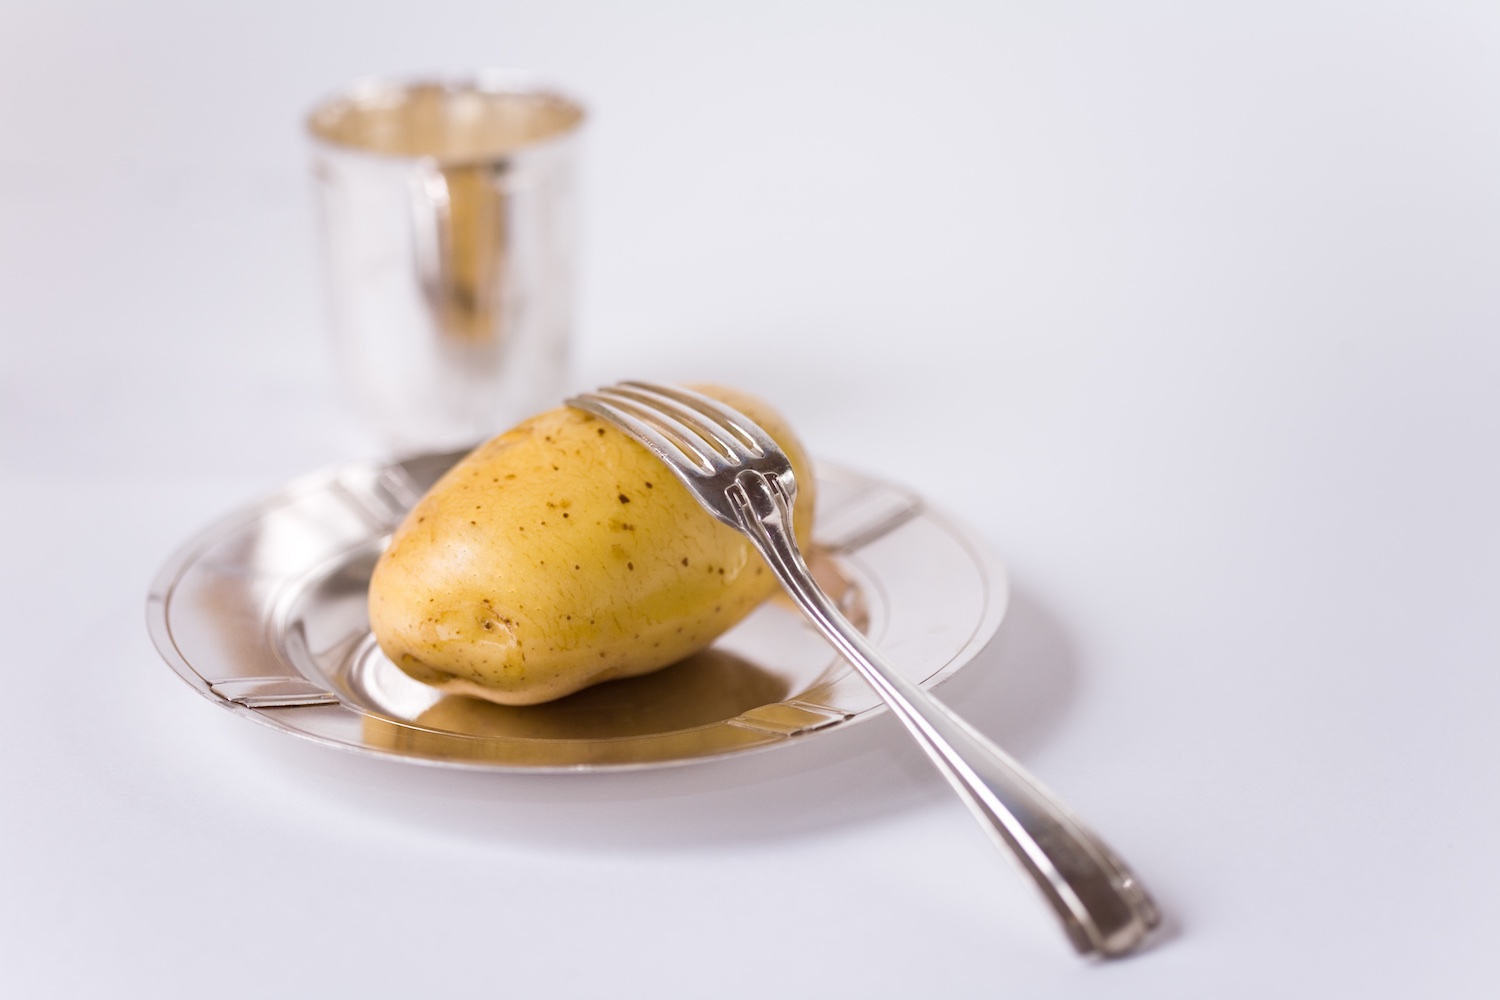 Timbales de pomme de terre et oignon / Potato and onion timbales